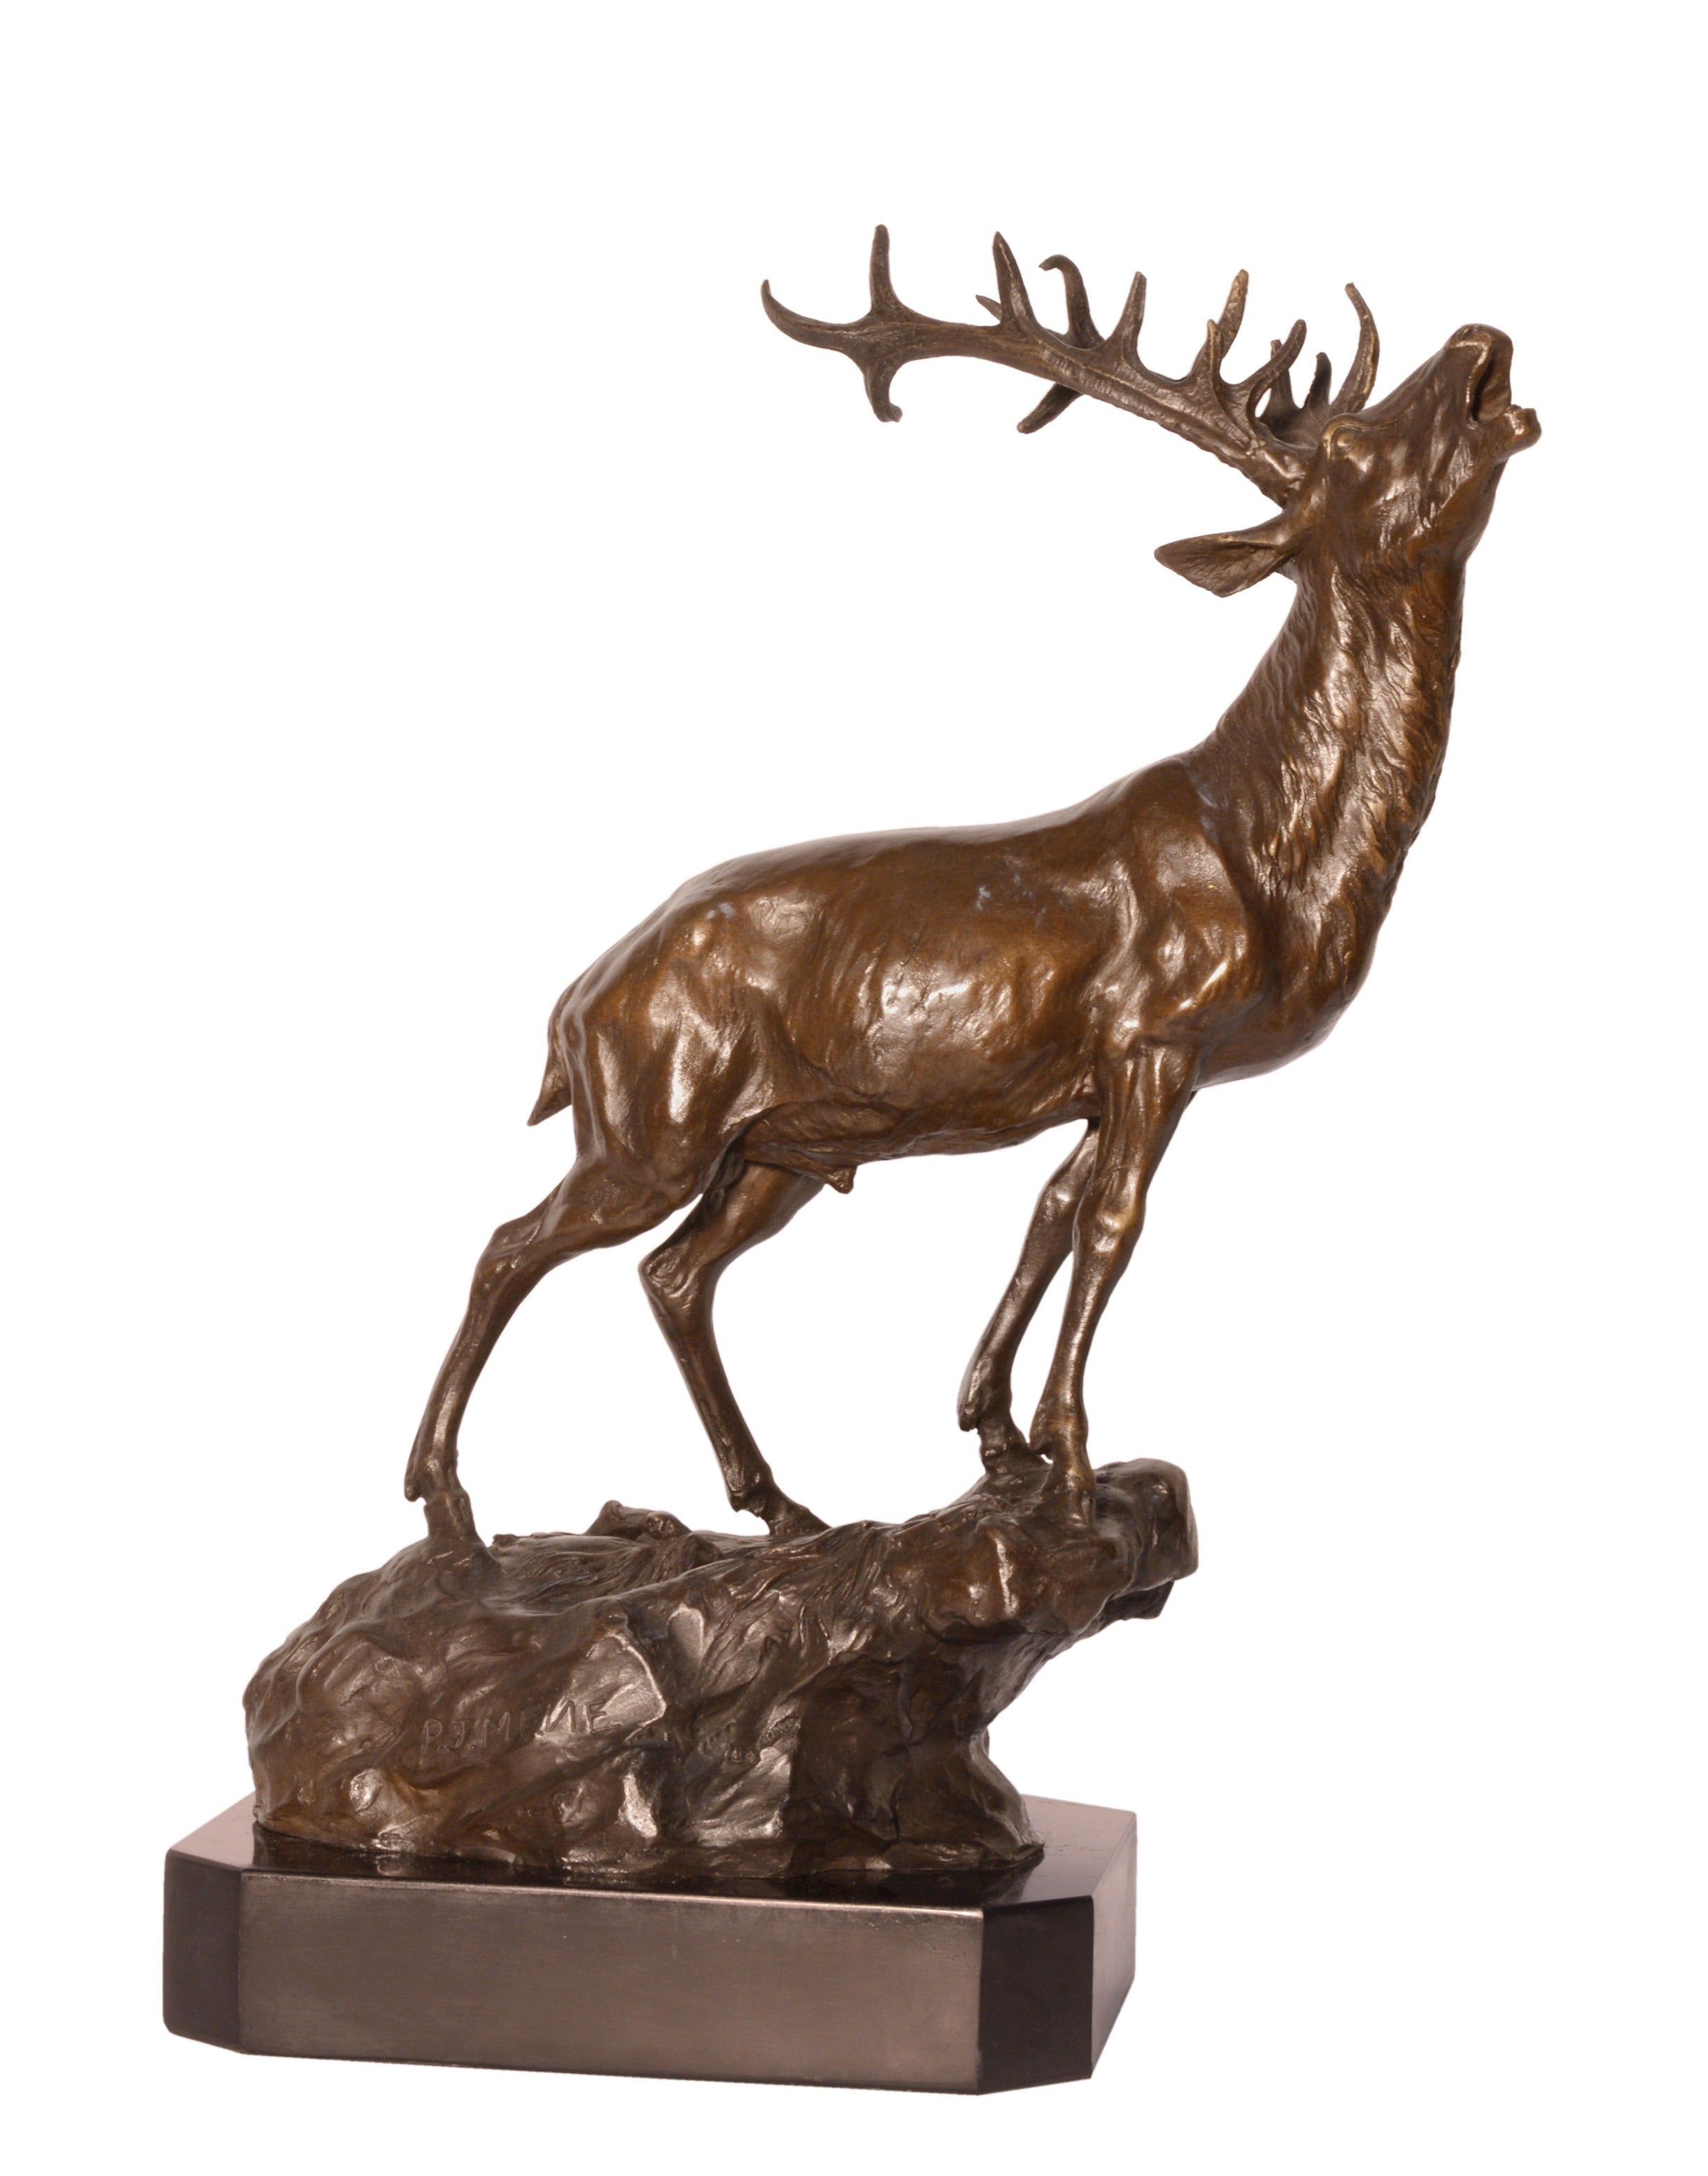 Bronzen beeld "Hert" I 6.4 kg I H: 37.8 x B: 18.3 x L: cm – Brons Beelden